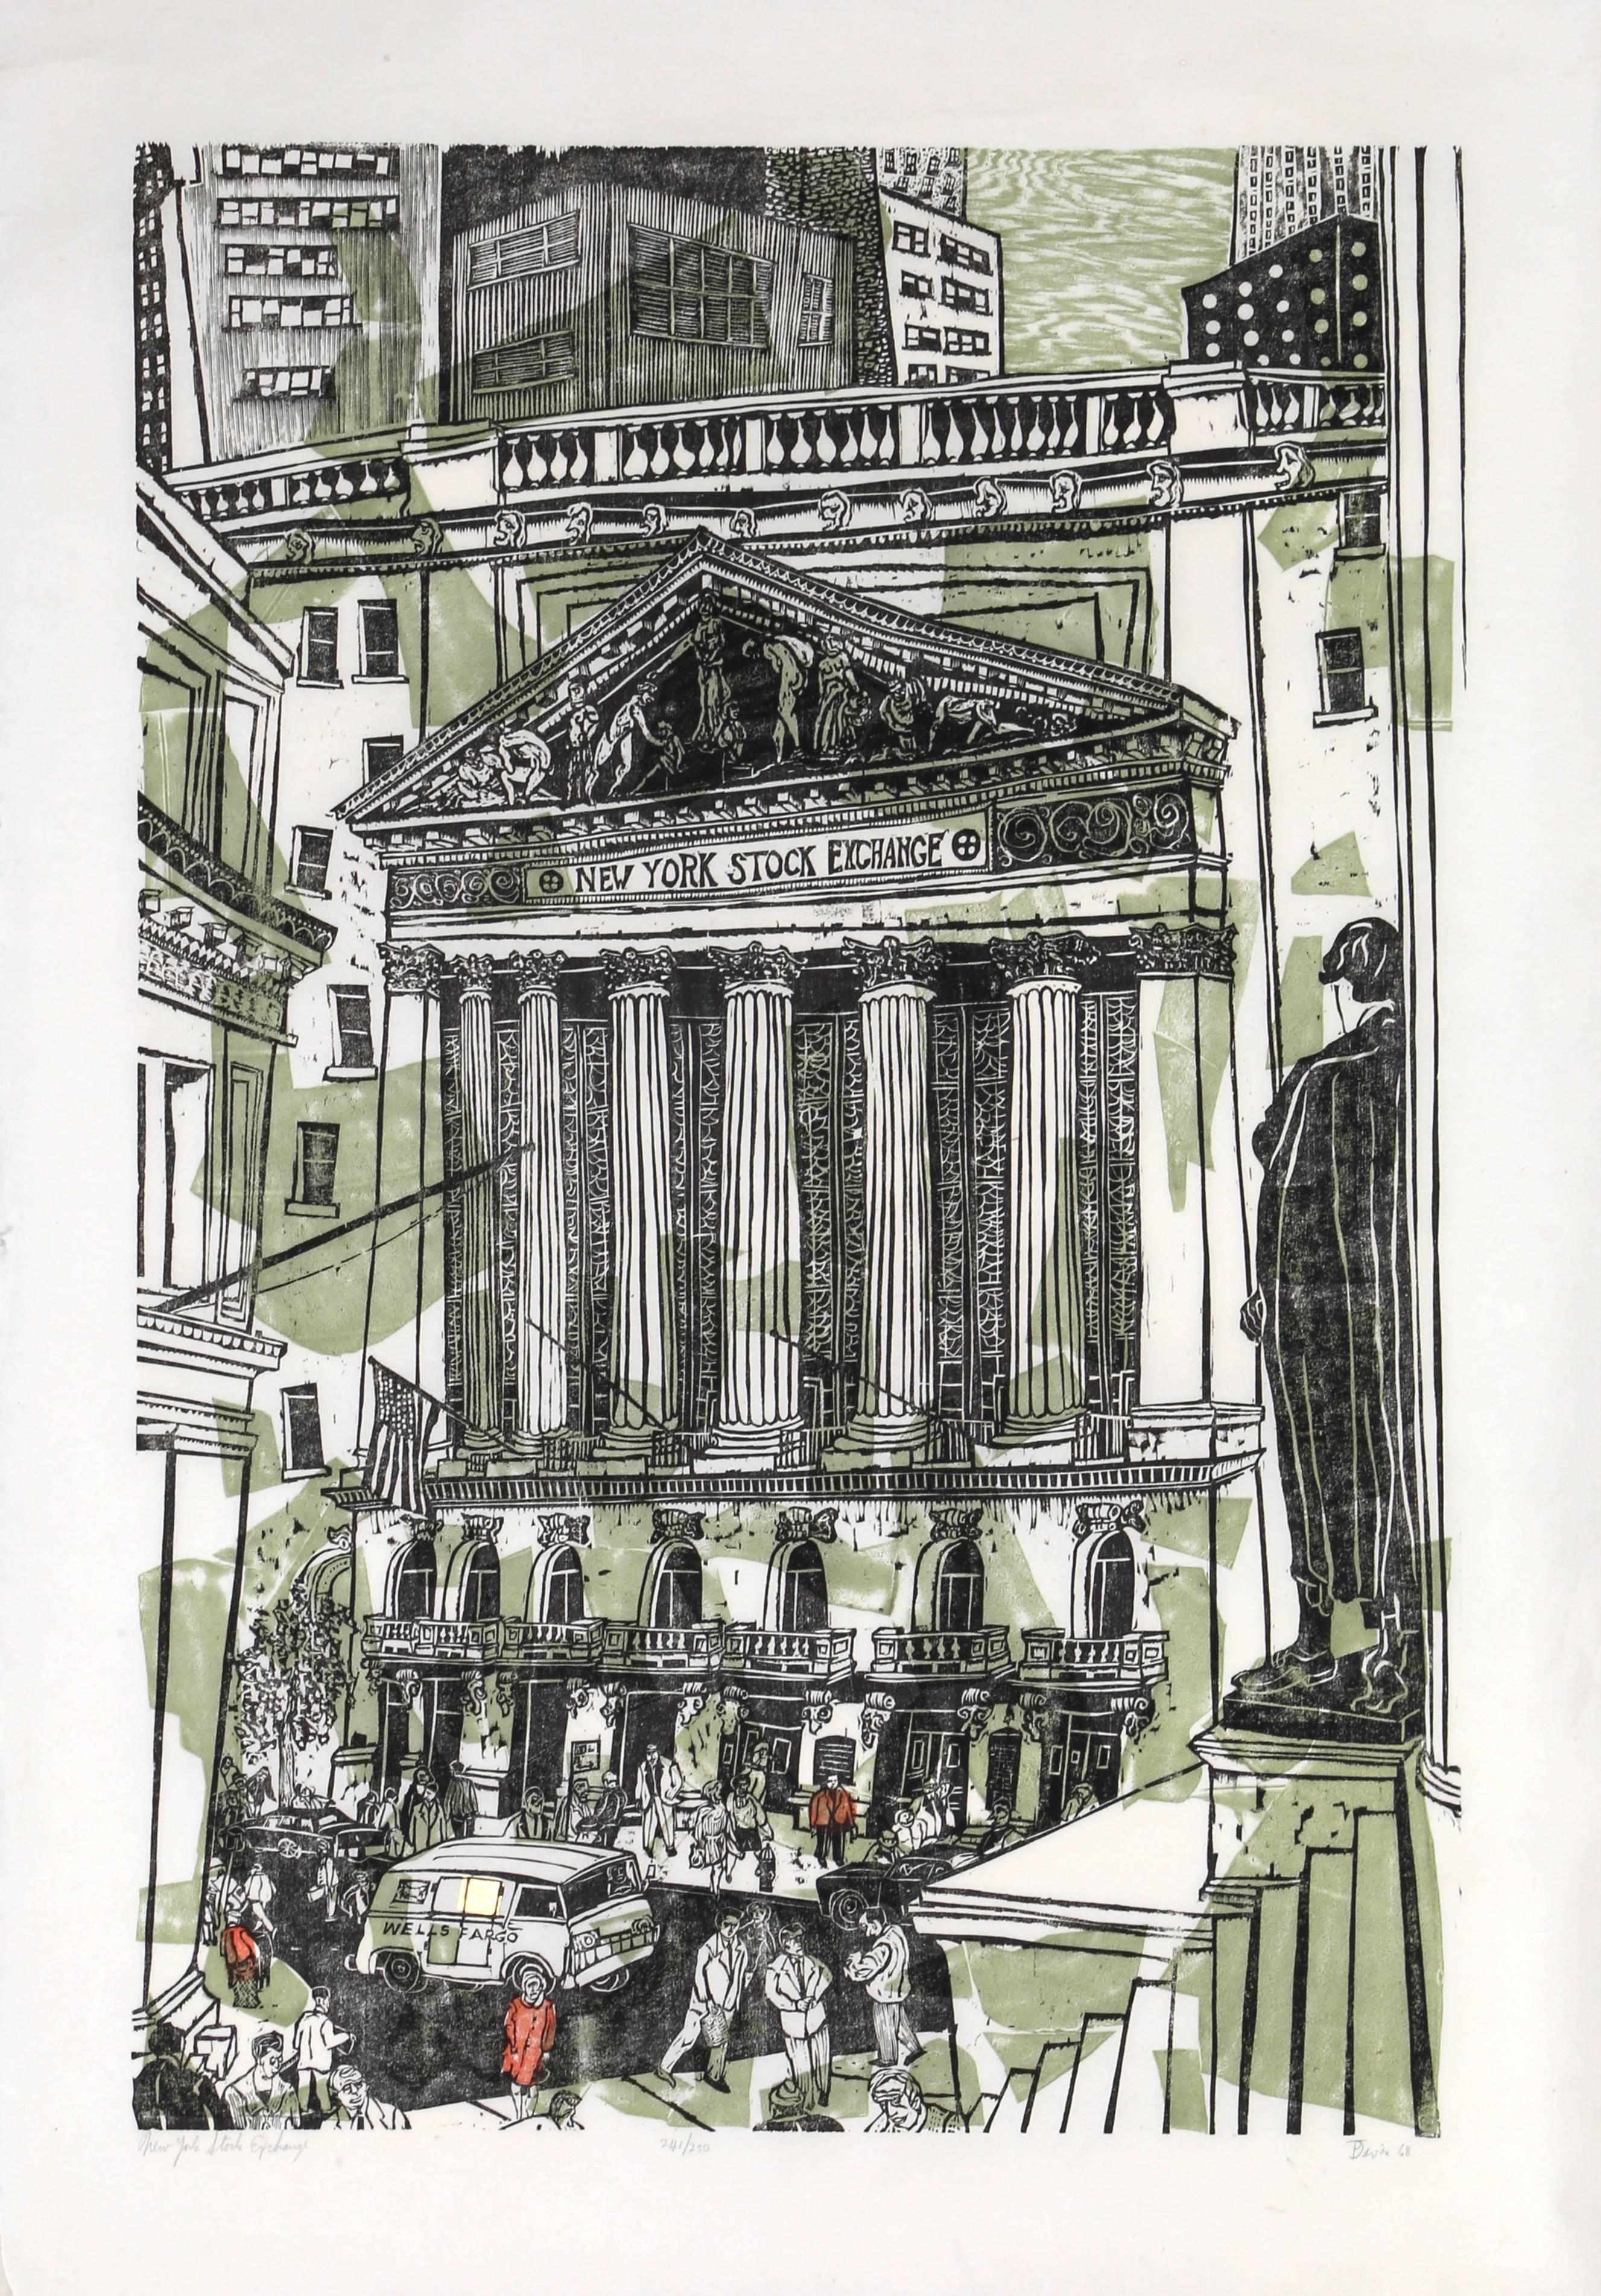 New Yorker Börse von New York, Holzschnittdruck von Ted Davies